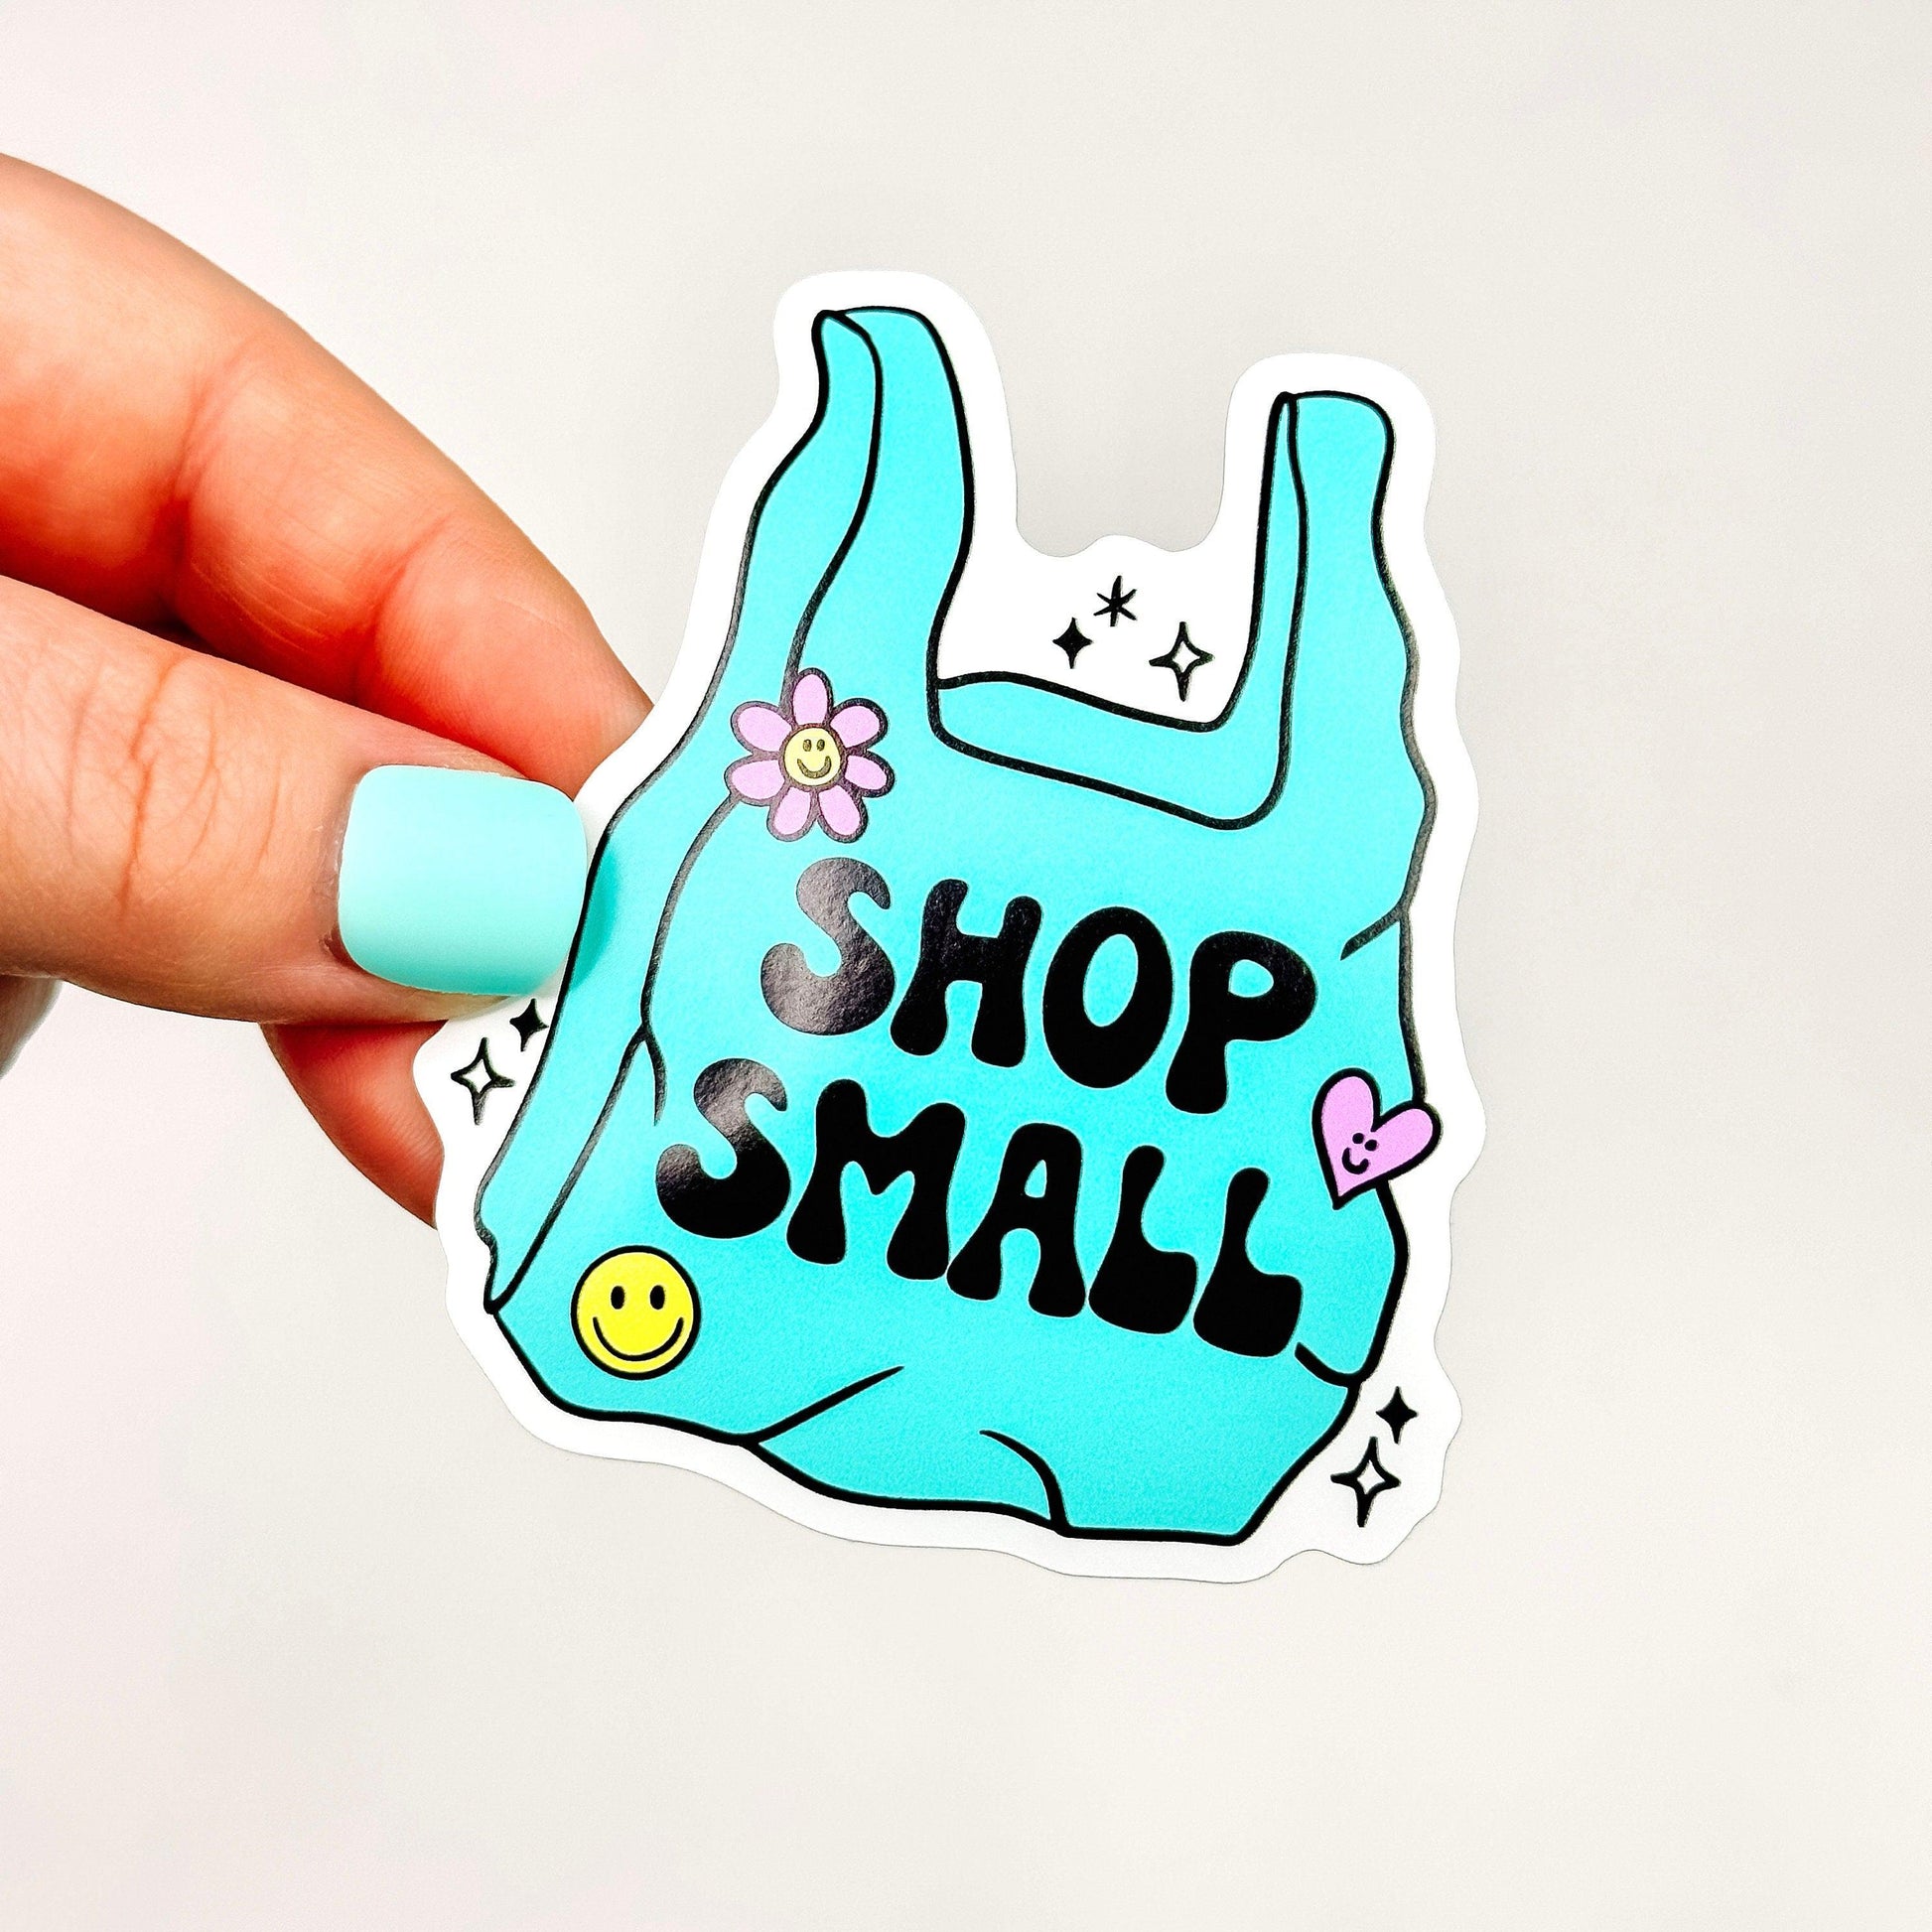 Shop Small - Decorative Vinyl Sticker-Cricket Paper Co.